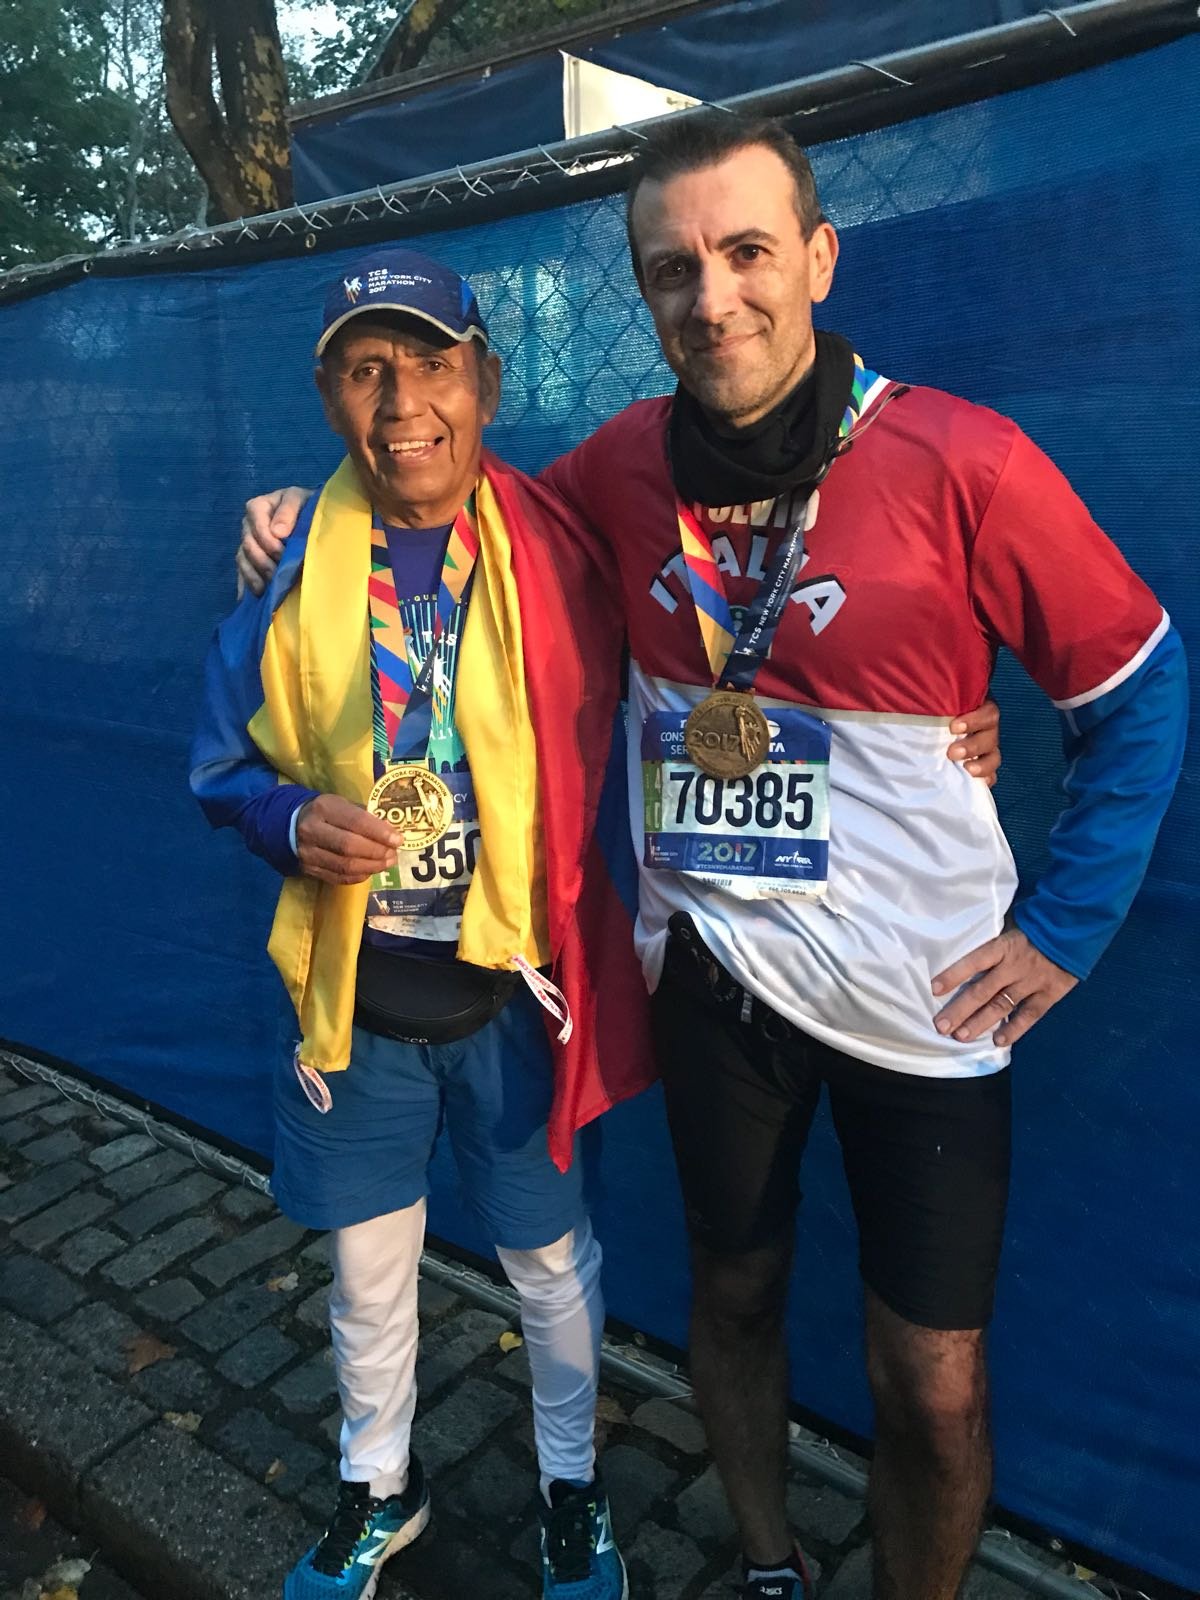 “Commosso al traguardo”: Fulvio racconta la sua maratona a New York